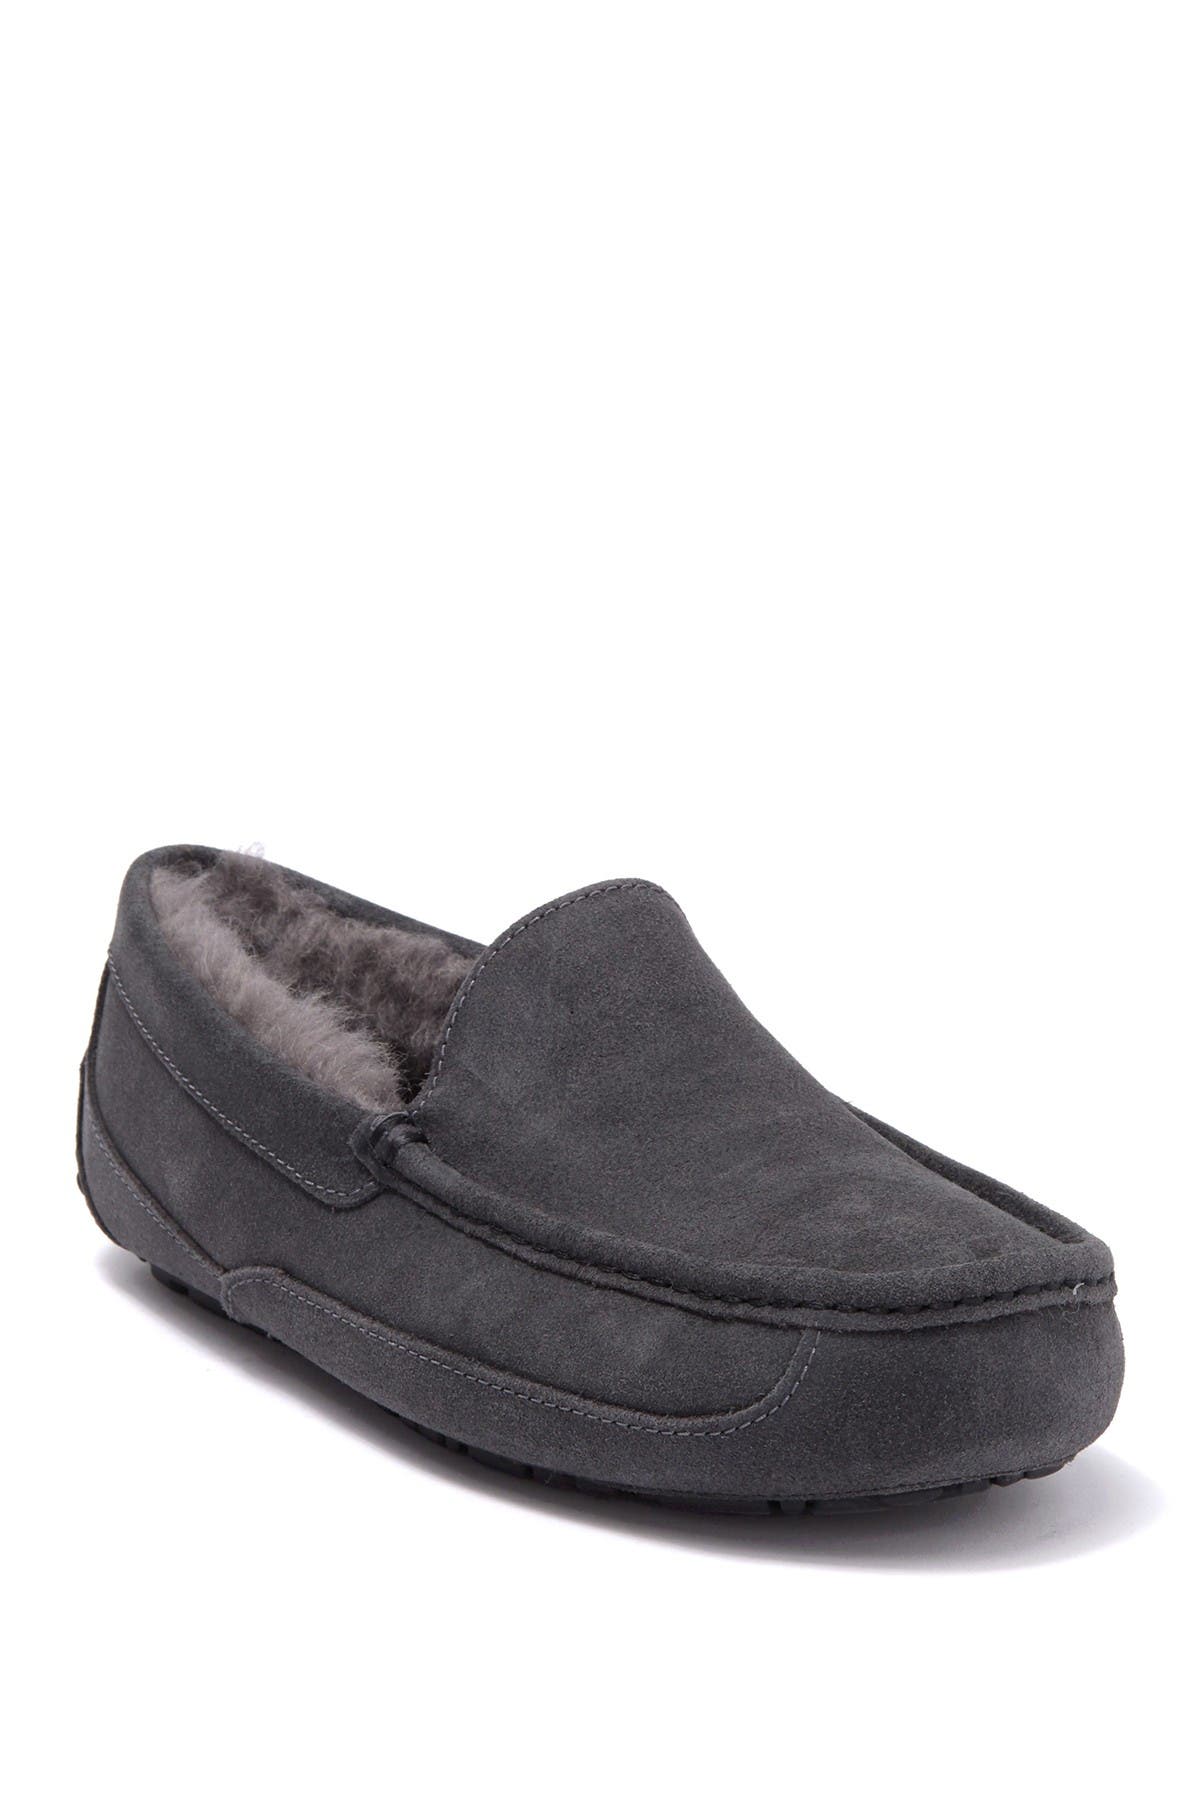 Comfort Slippers for Men | Nordstrom Rack